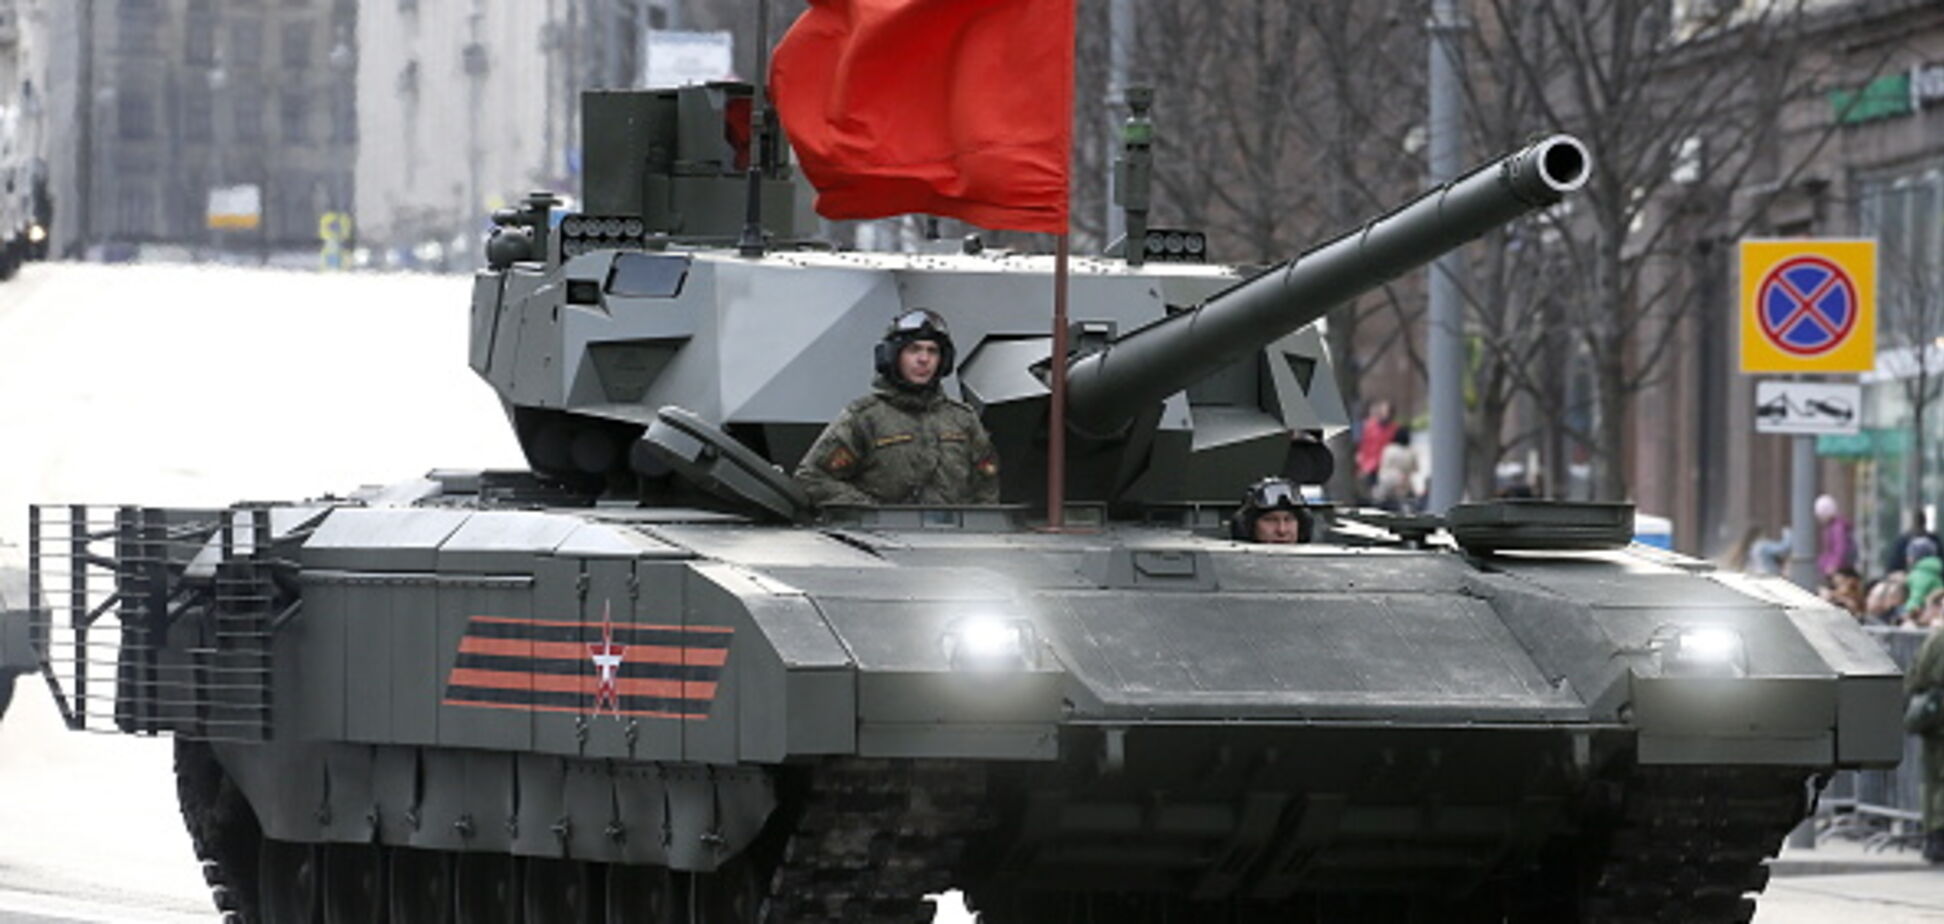 Занадто дорога 'труна': експерт розгромив новітній танк Путіна